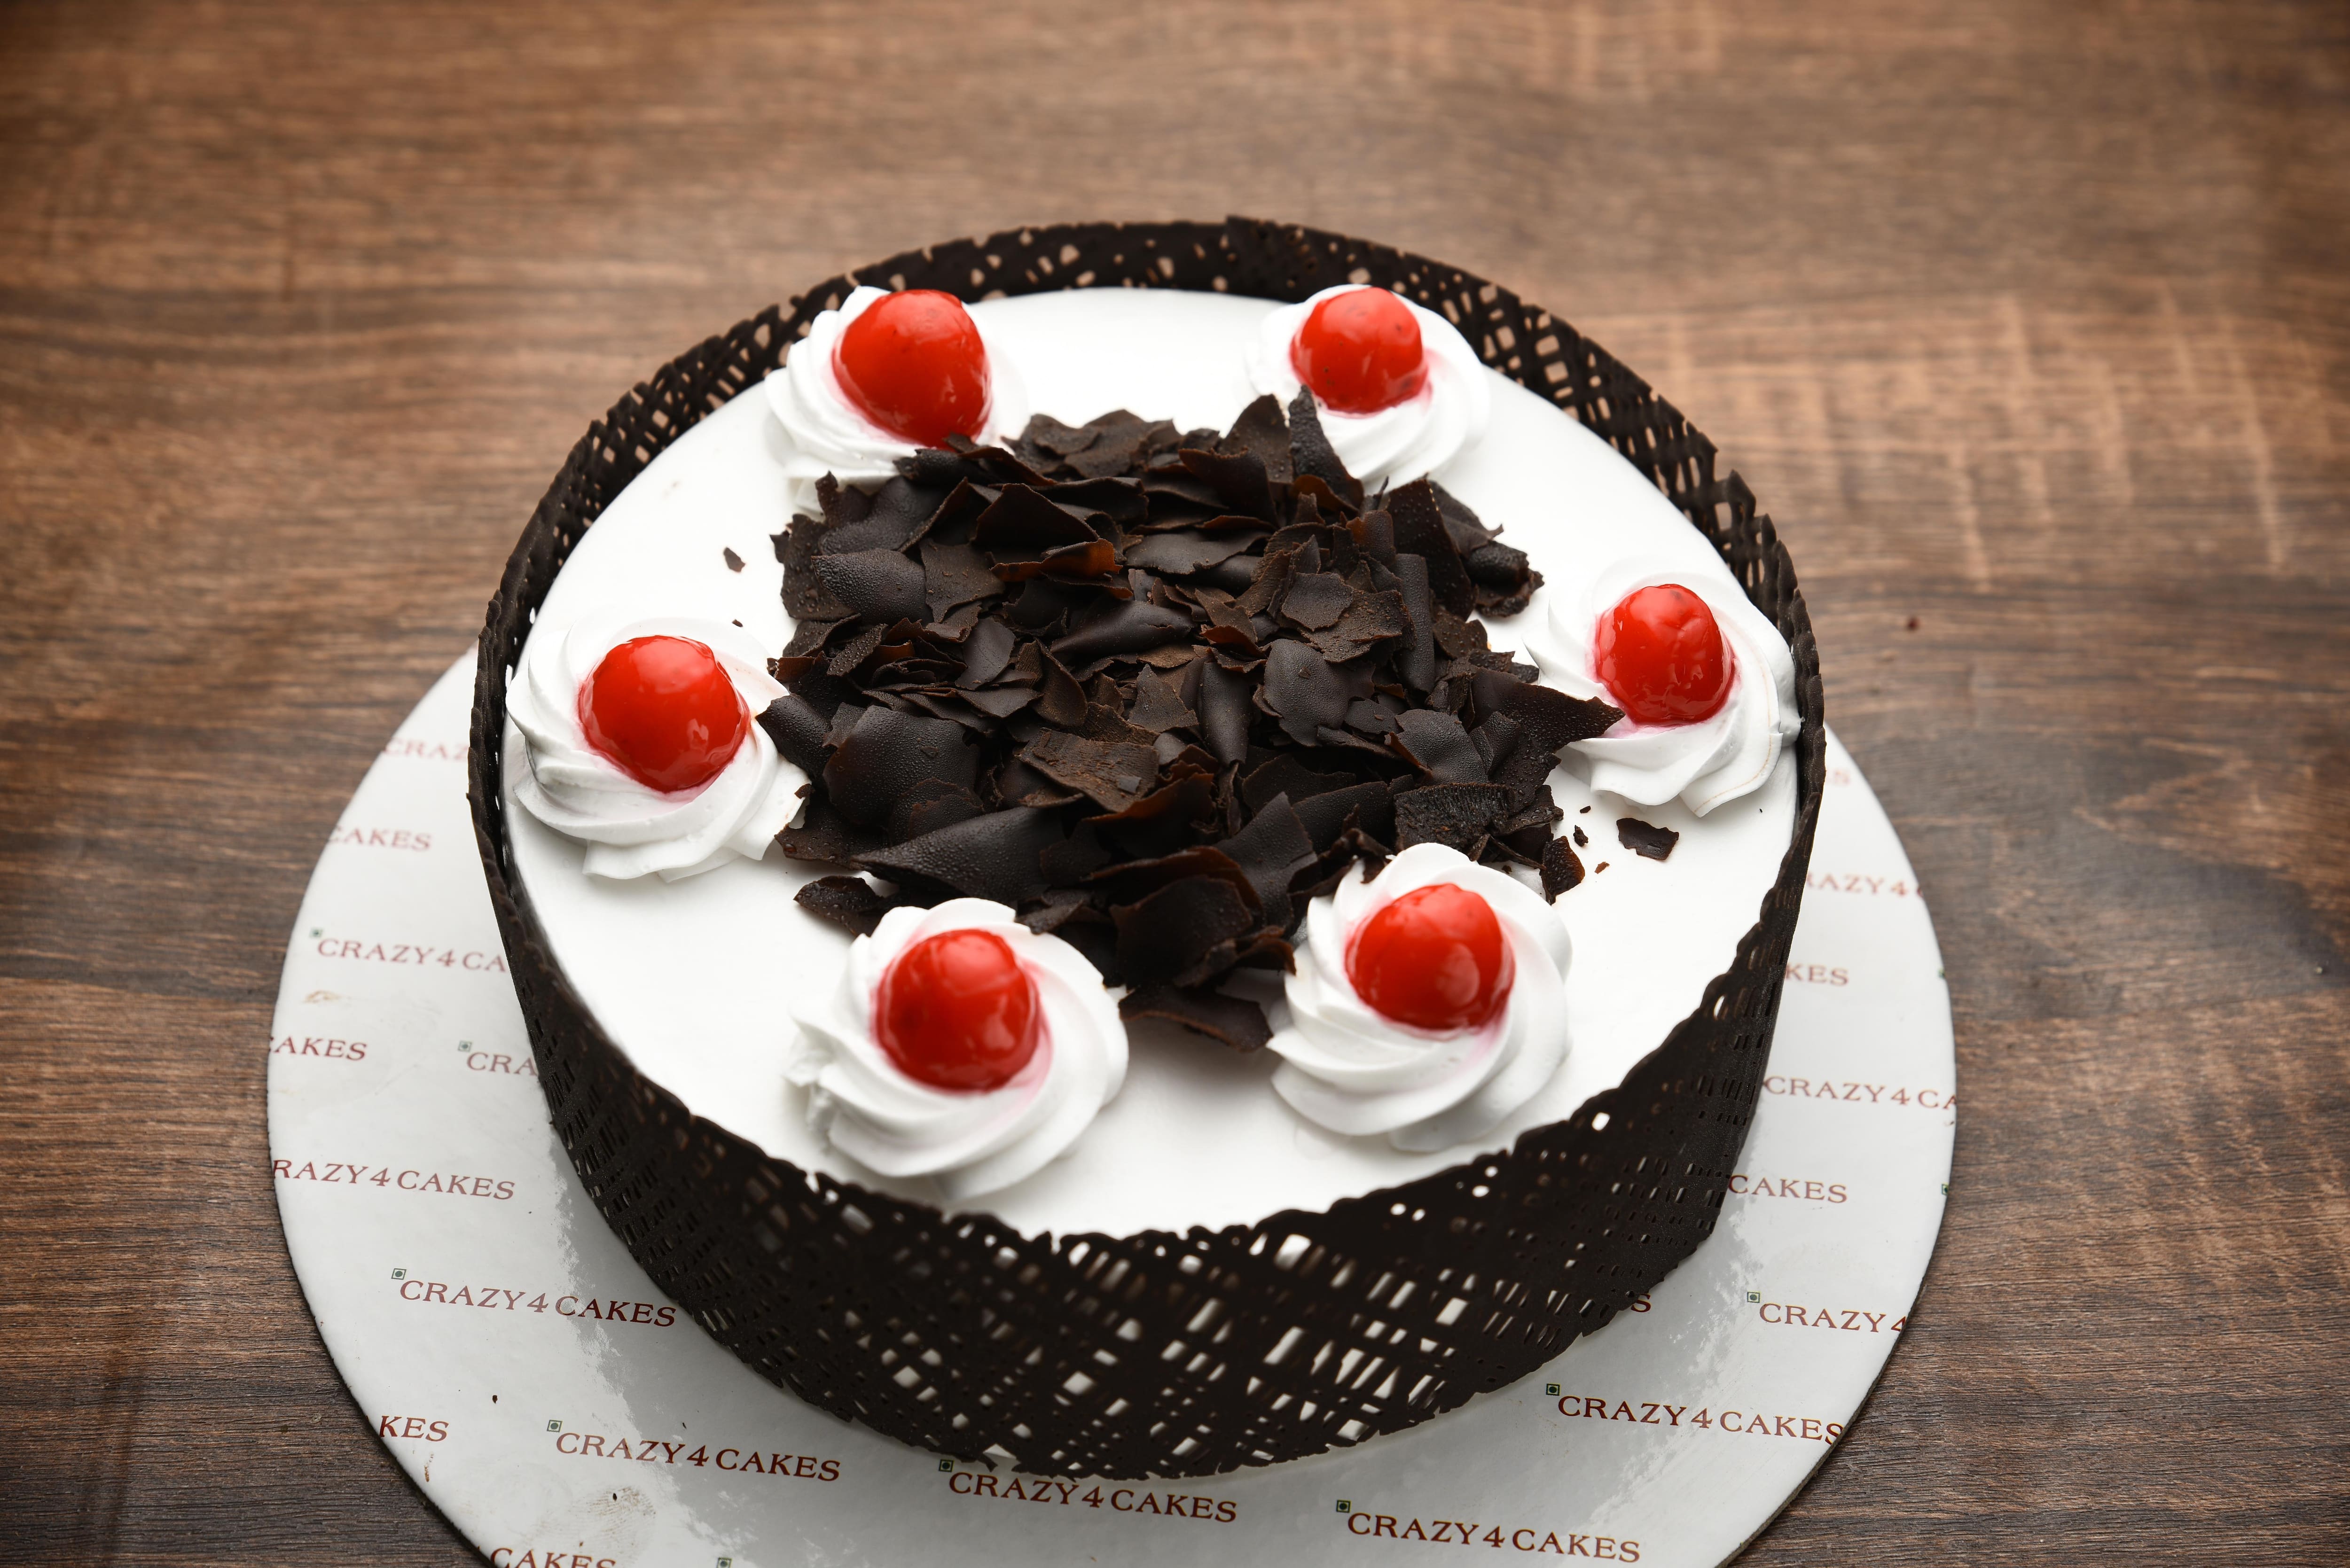 Crazy 4 Cakes (Closed Down) in Ballygunge,Kolkata - Best in Kolkata -  Justdial